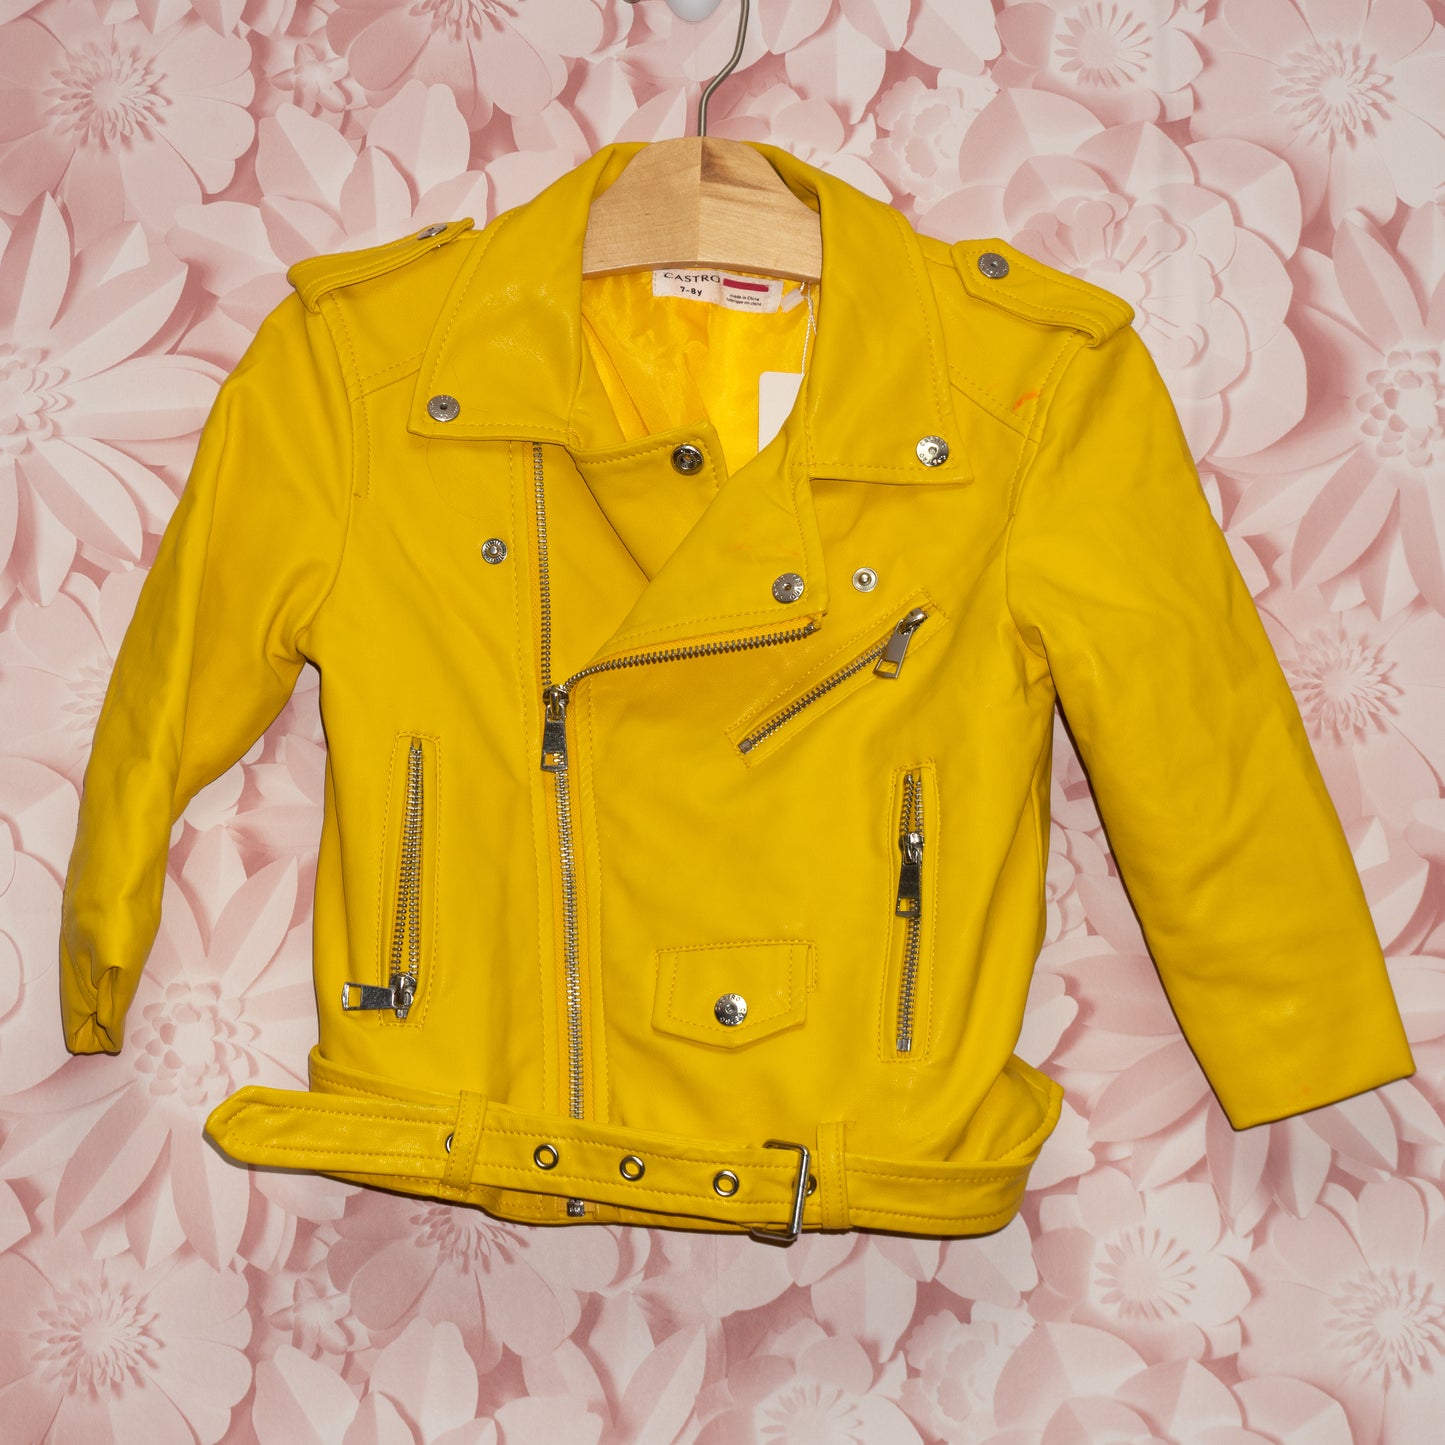 Yellow Jacket Size 7/8y